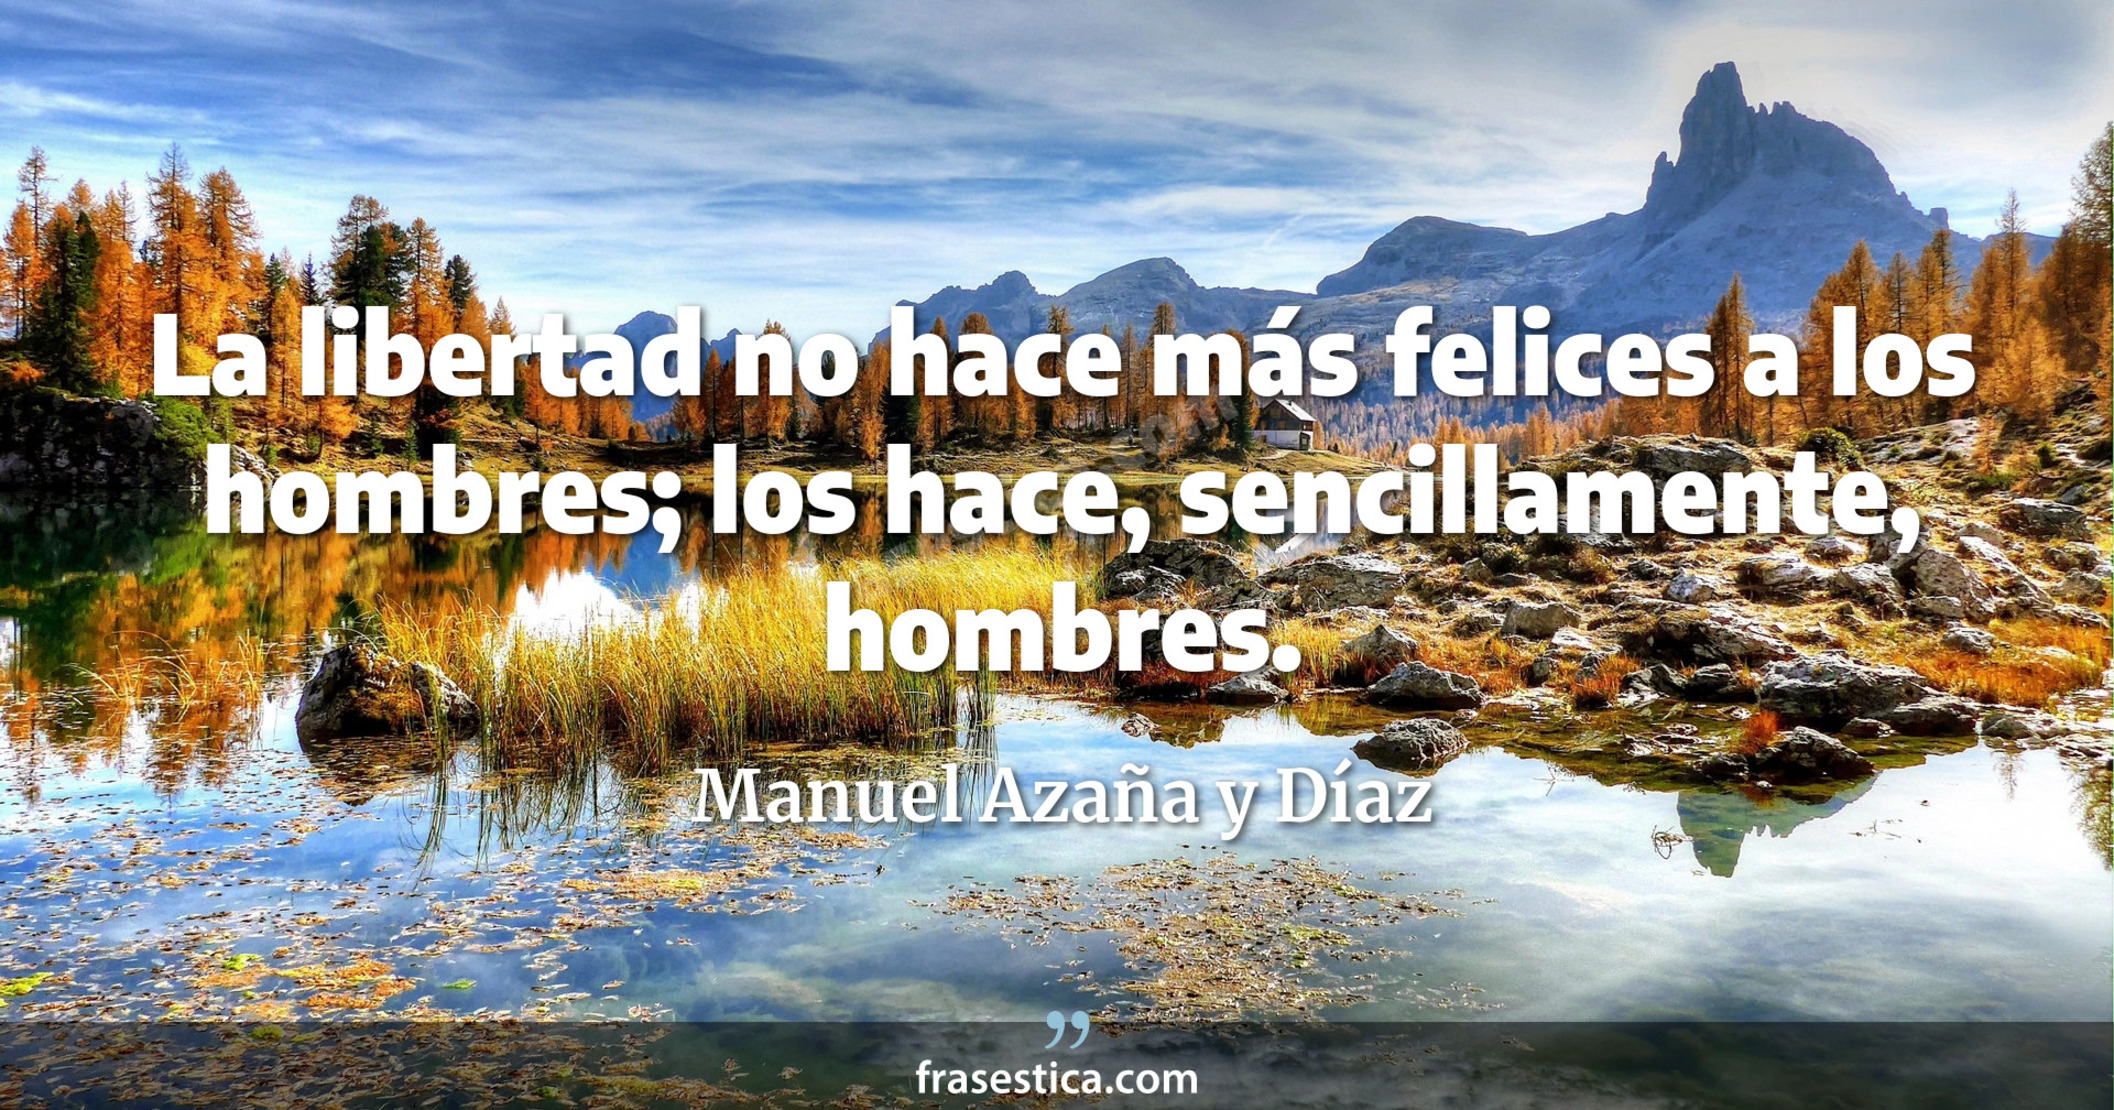 La libertad no hace más felices a los hombres; los hace, sencillamente, hombres. - Manuel Azaña y Díaz